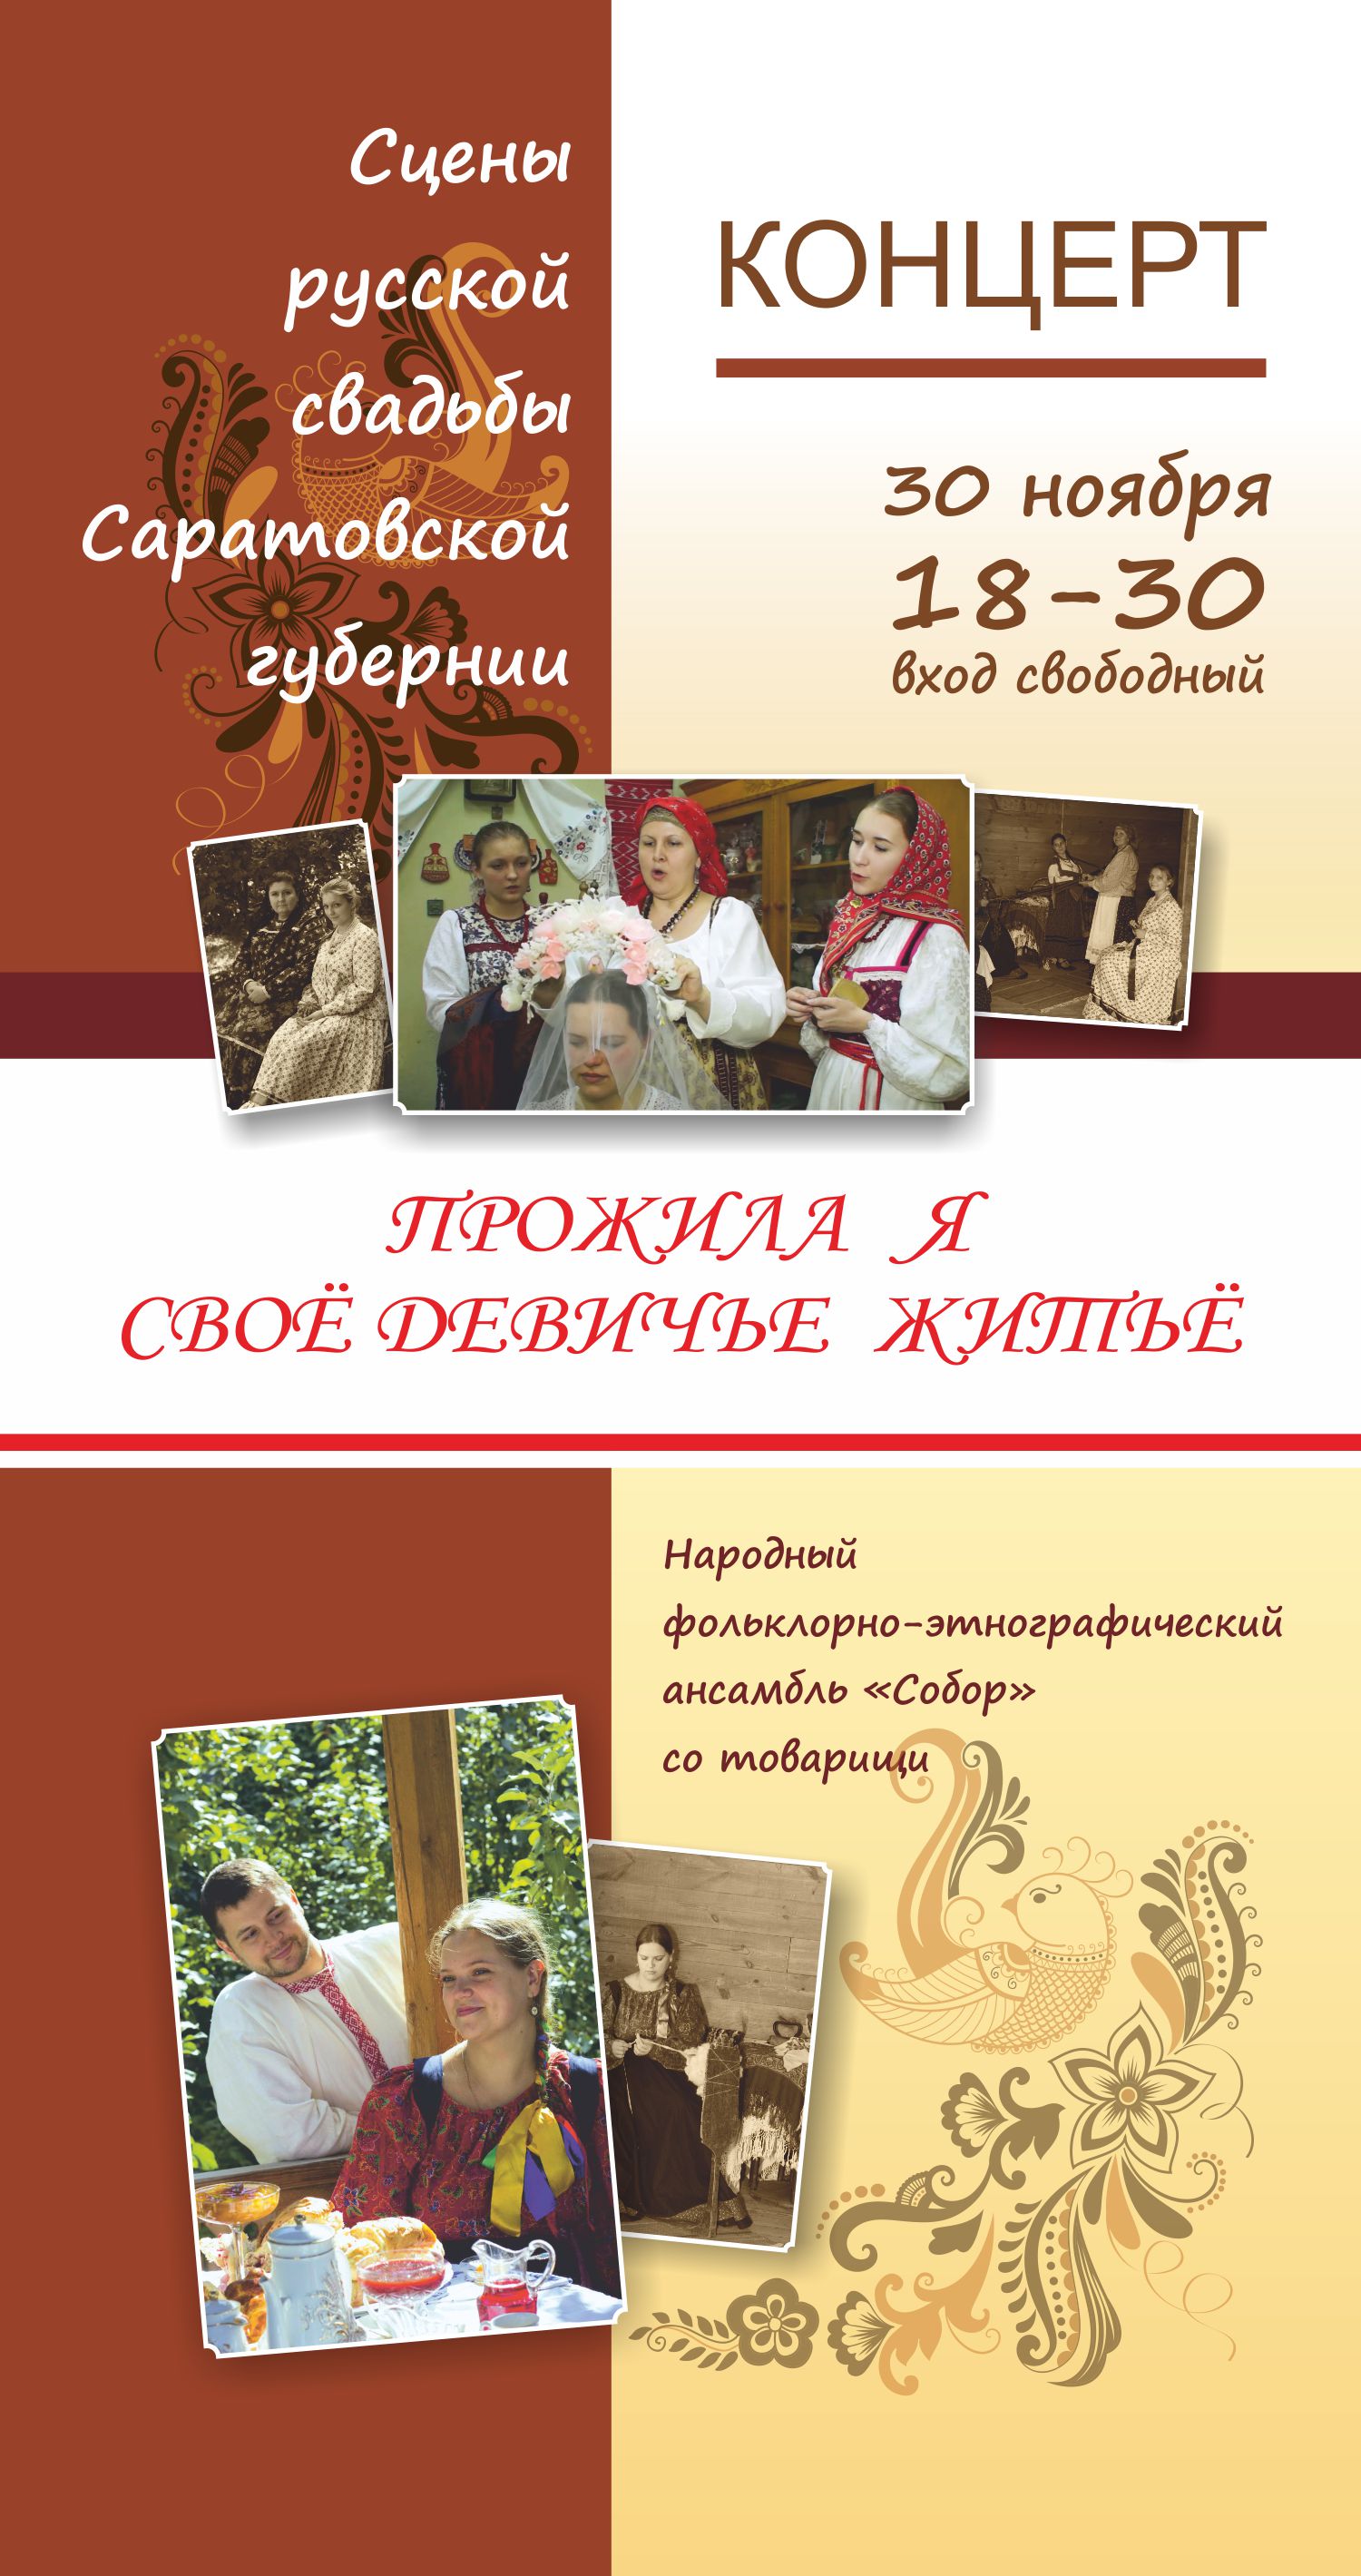 Концерт народного фольклорно-этнографического ансамбля «Собор»